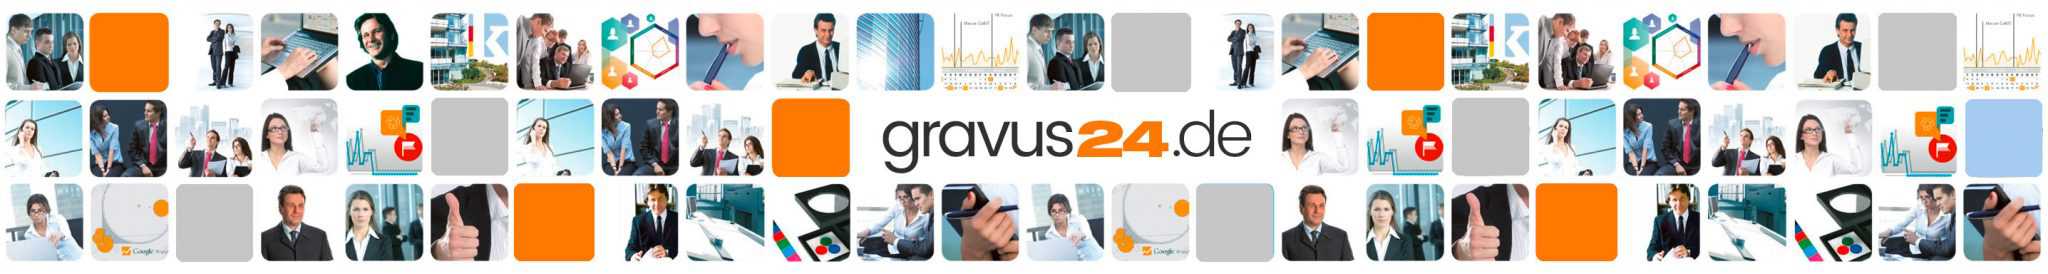 (c) Gravus24.de